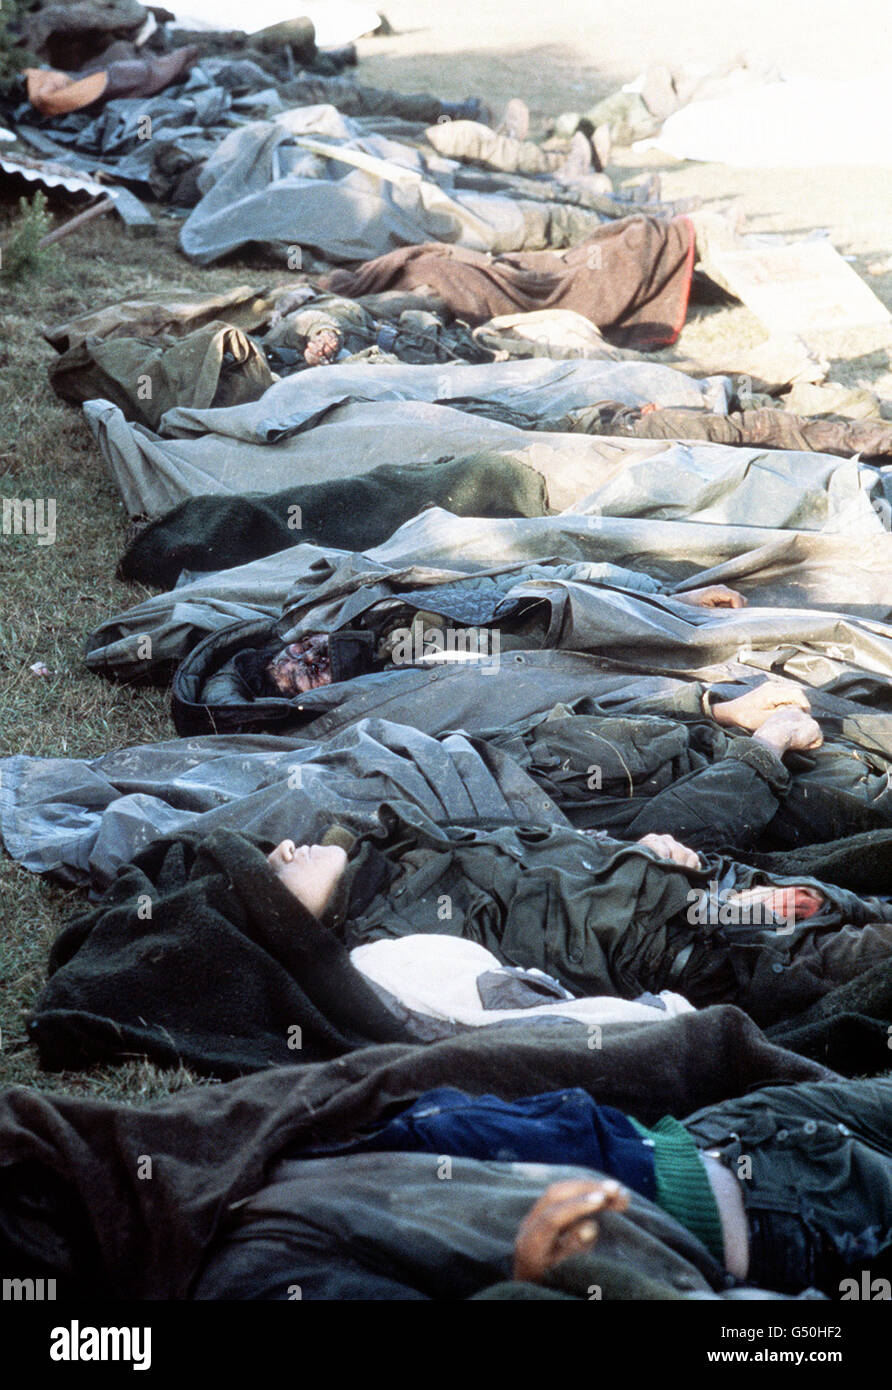 DER FALKLANDKRIEG 1982: Argentinische Truppen, die im Kampf um Goose Green ums Leben kamen, warten auf den Transport nach Port Darwin zur Beerdigung. Goose Green und Port Darwin wurden am 28. Mai 1982 von 2 para (2. Bataillon Fallschirmregiment) wieder erobert. *25/03/02 Argentinische Truppen, die bei der Schlacht um Goose Green auf den Falklandinseln ums Leben kamen, warteten auf den Transport nach Port Darwin zur Beerdigung. Der 20. Jahrestag der Invasion der Falklandinseln durch argentinische Truppen wird am 2. April 2002 stattfinden. Stockfoto